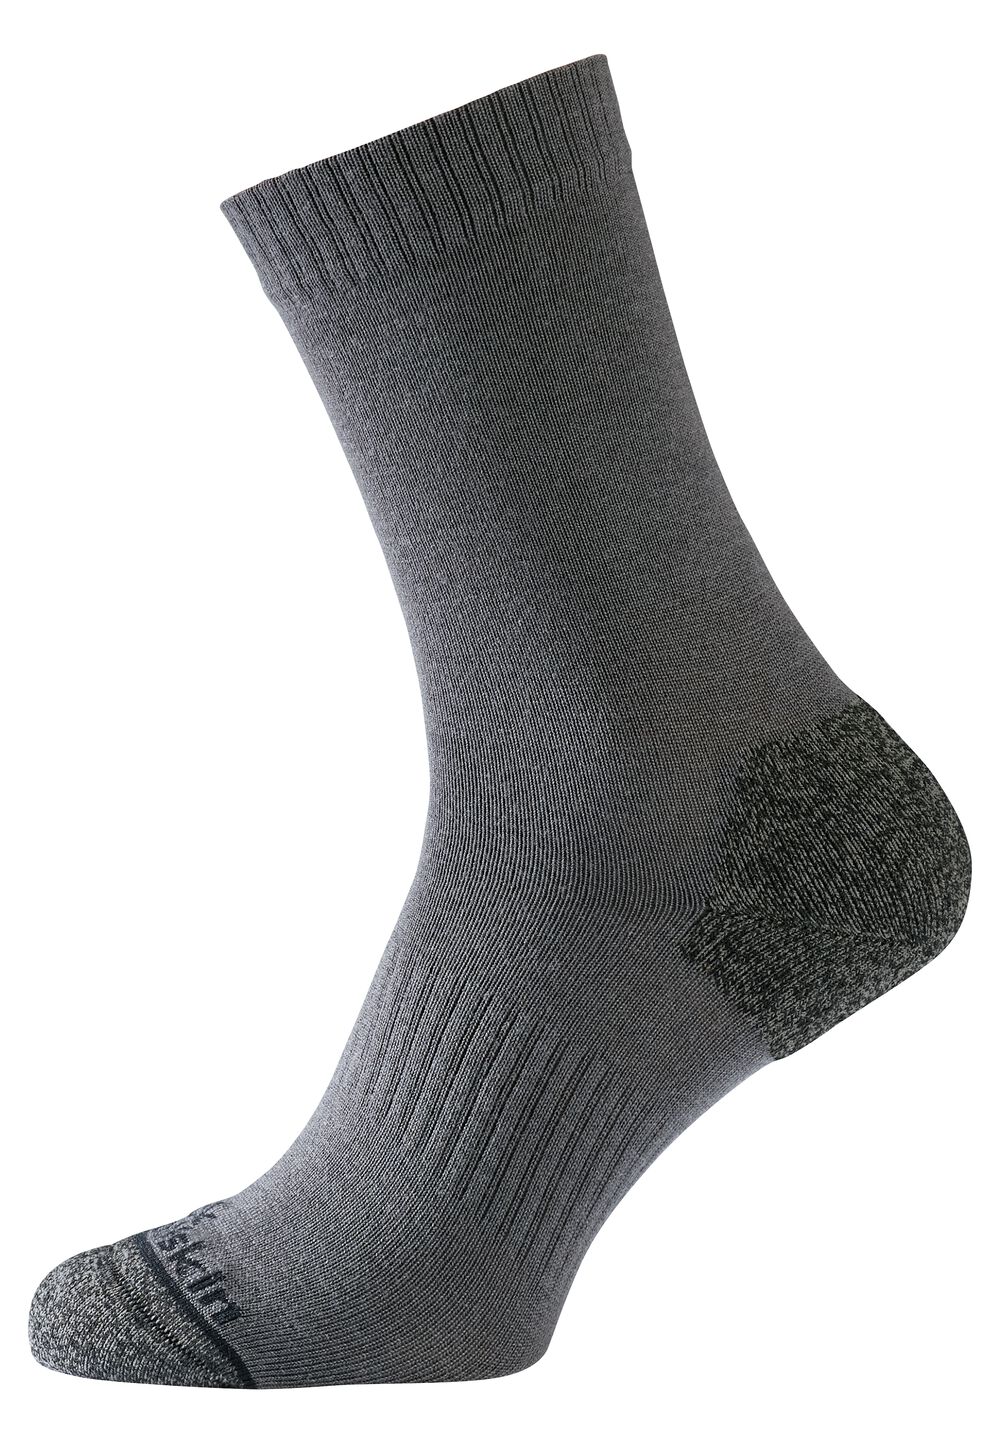 Jack Wolfskin Merino-Socken Urban Merino Sock CL C 44-46 grau dark grey von Jack Wolfskin